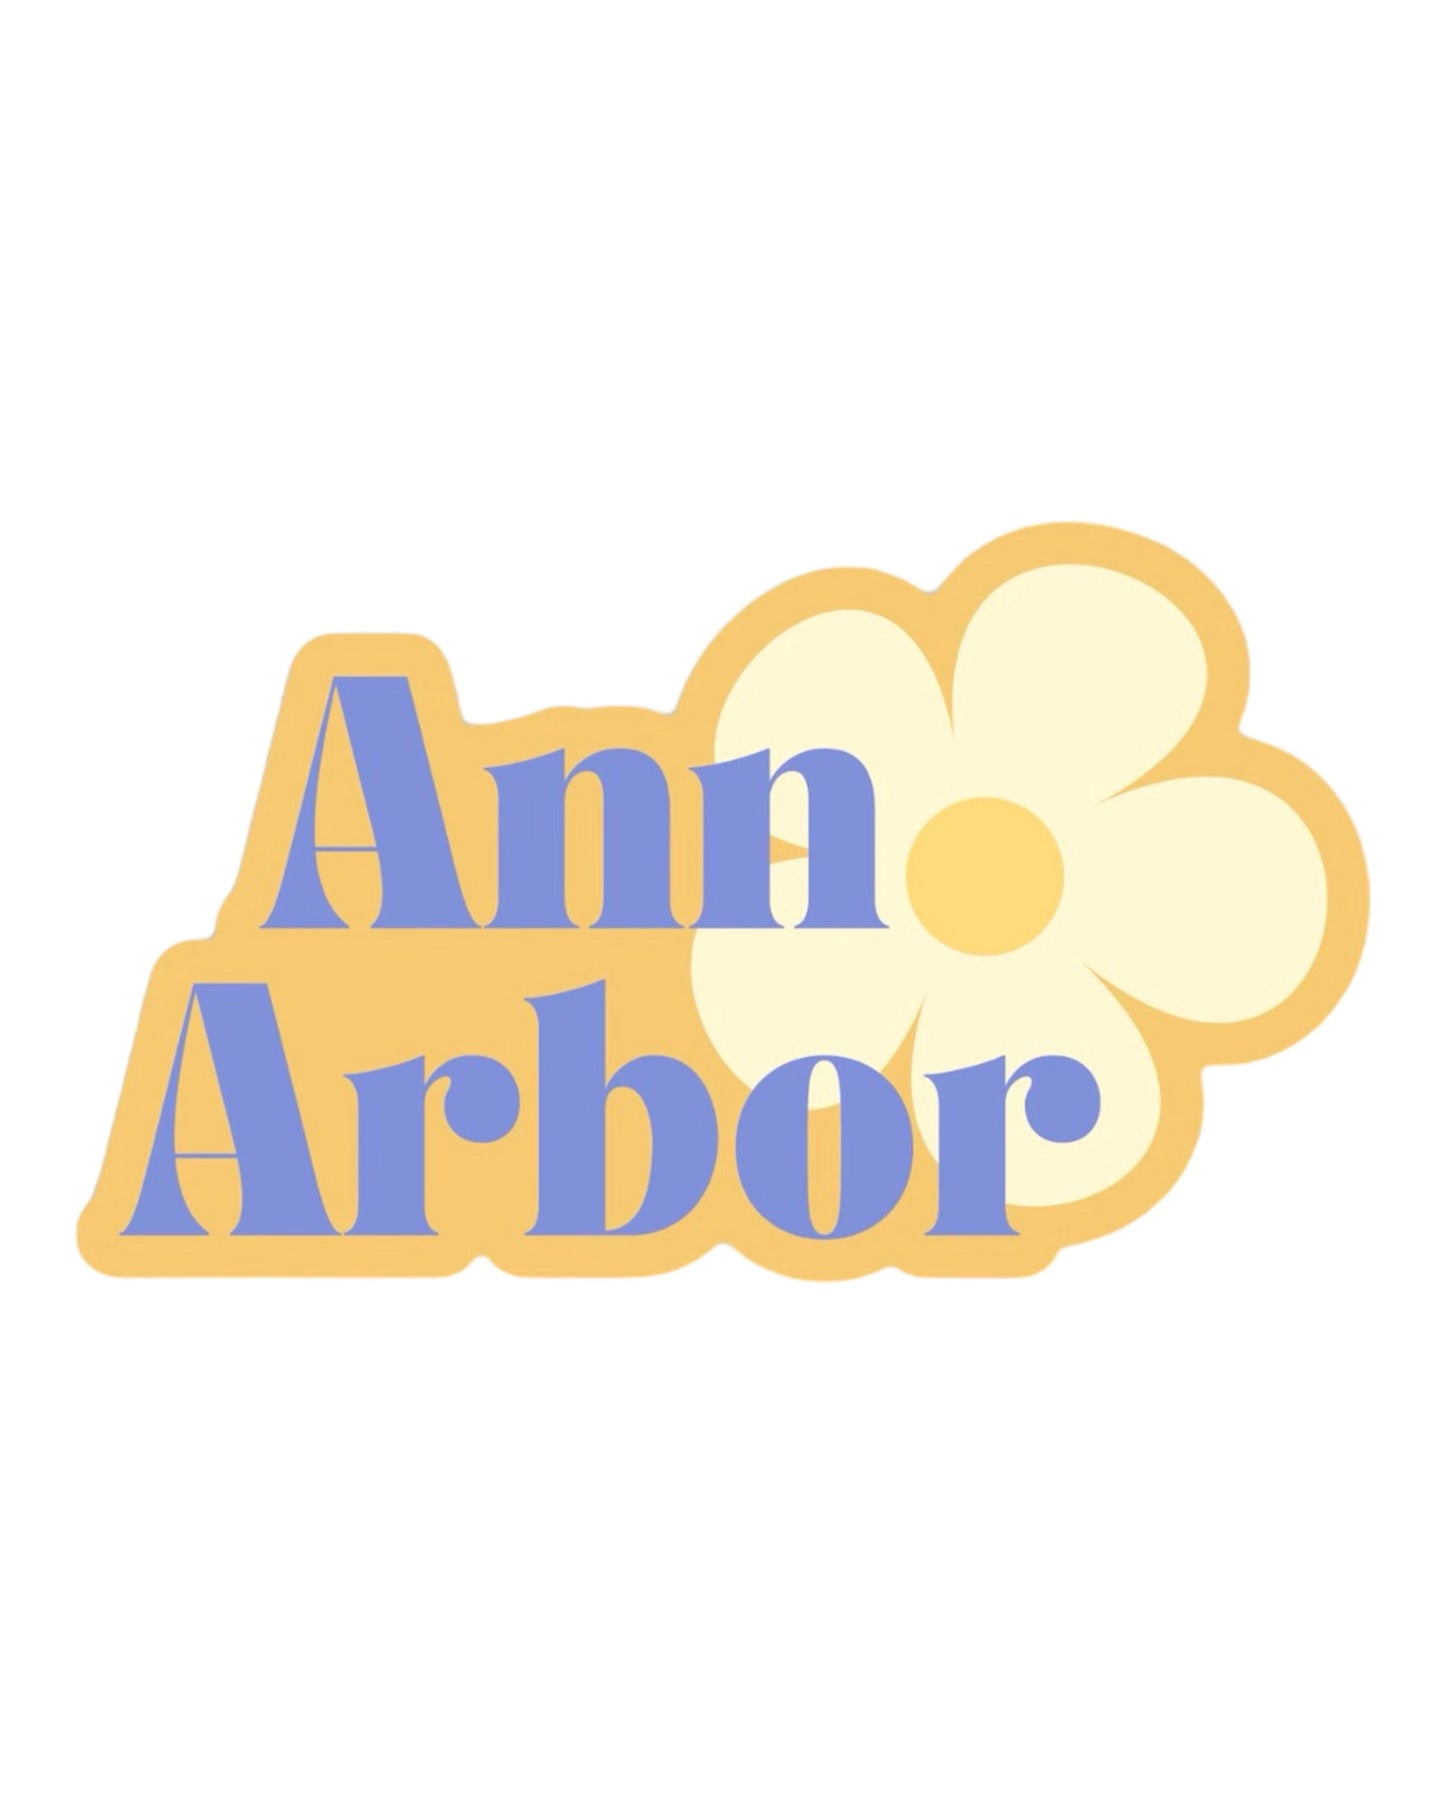 Ann Arbor Flower Sticker